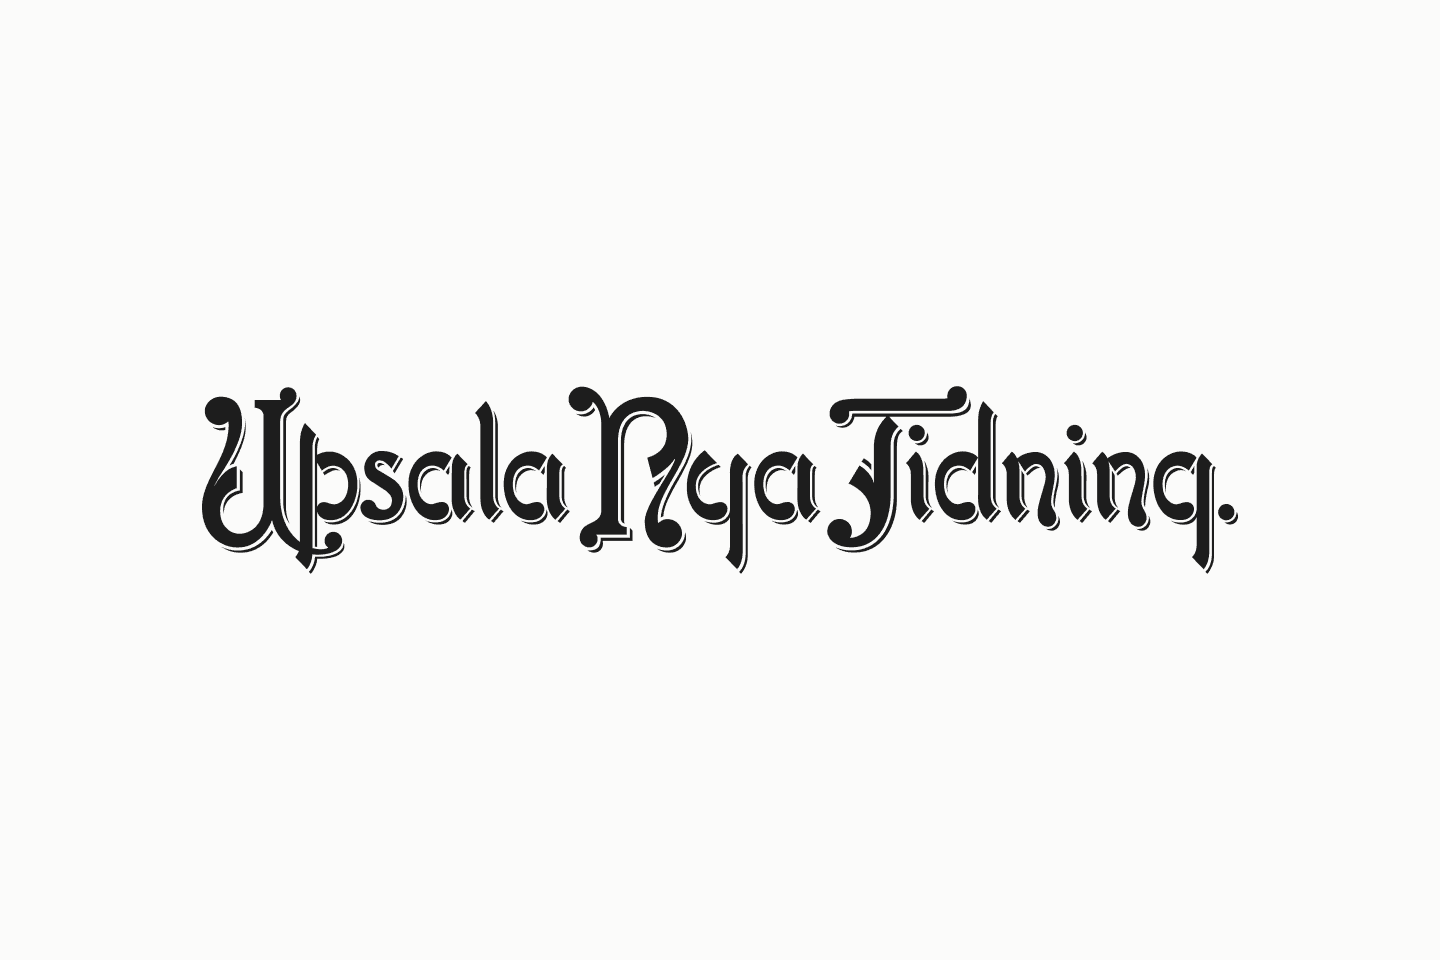 Uppsala nya tidning logo.